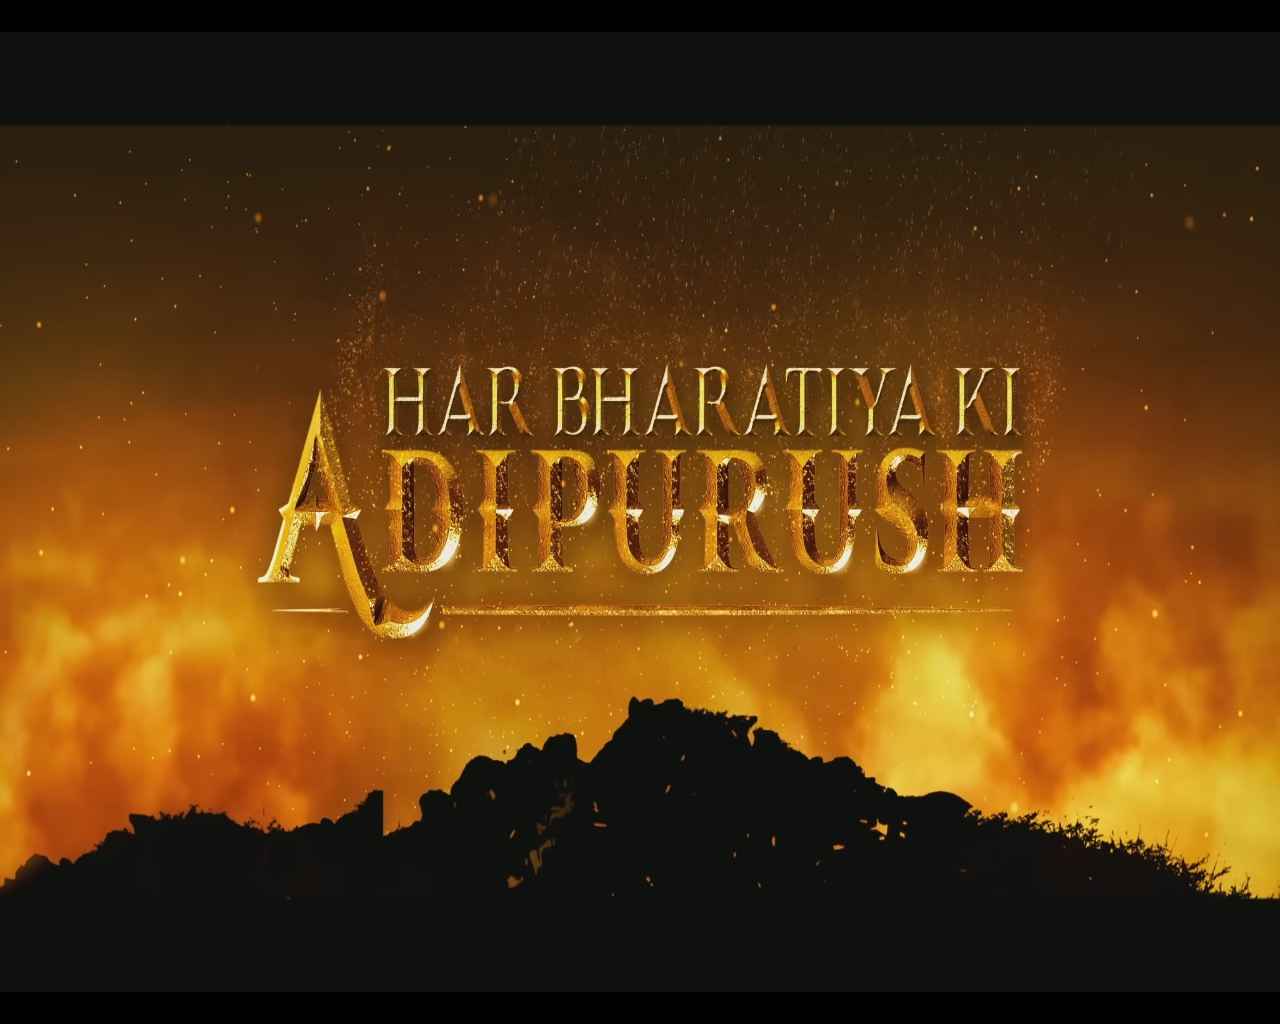 Adipurush full movie watch online free in HD 720